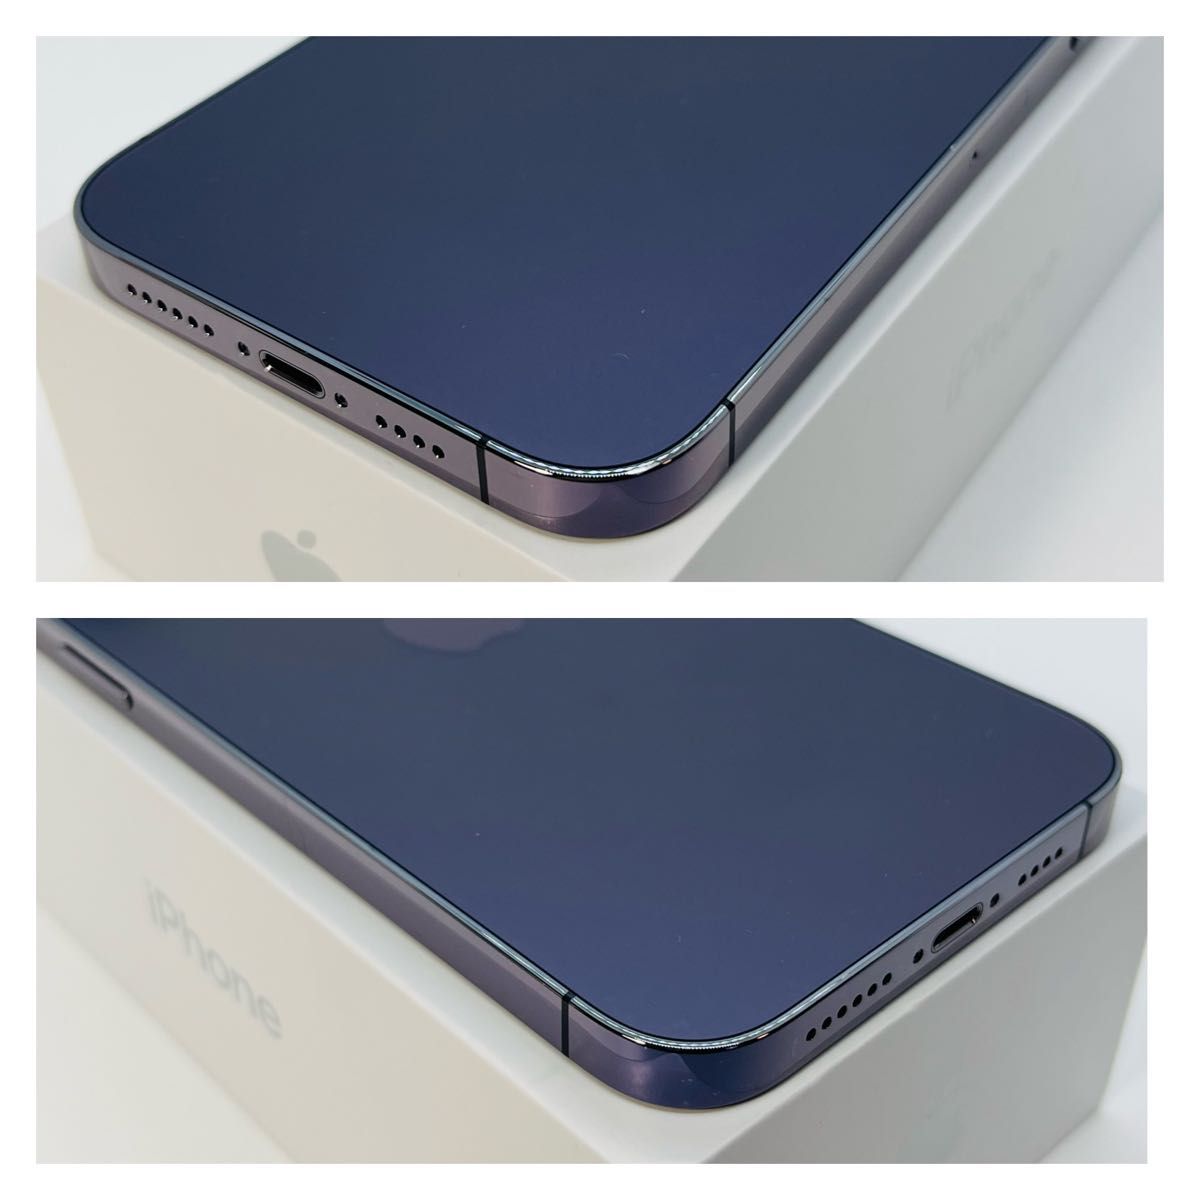 A iPhone14 Pro Max ディープパープル 128GB SIMフリー